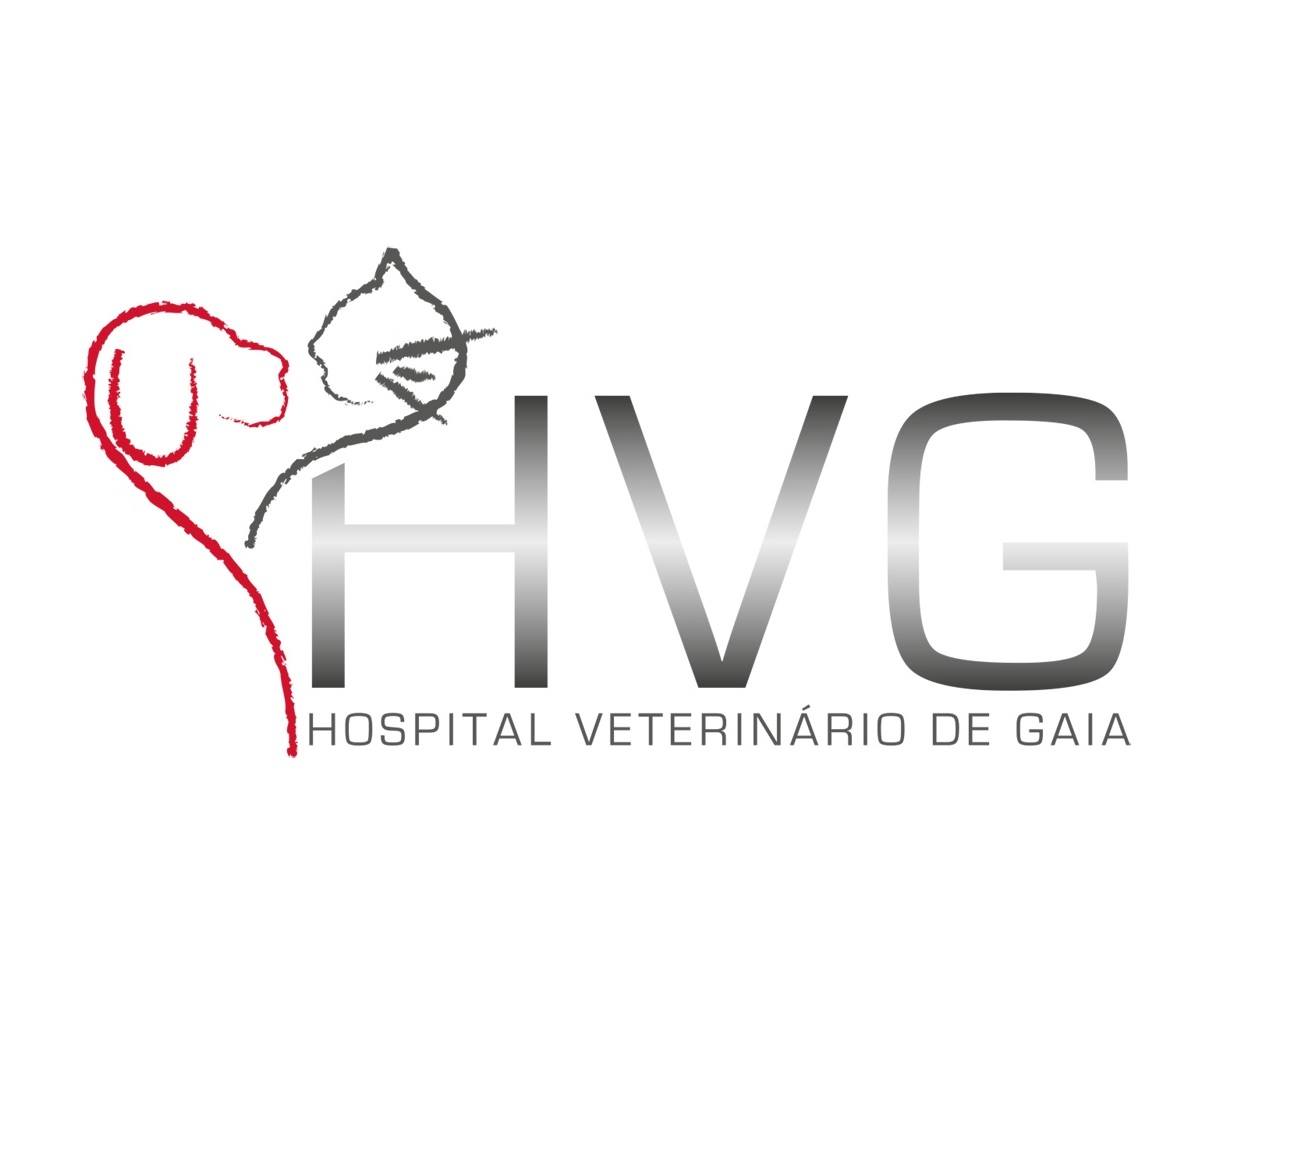 HVG - Hospital Vet. de Gaia